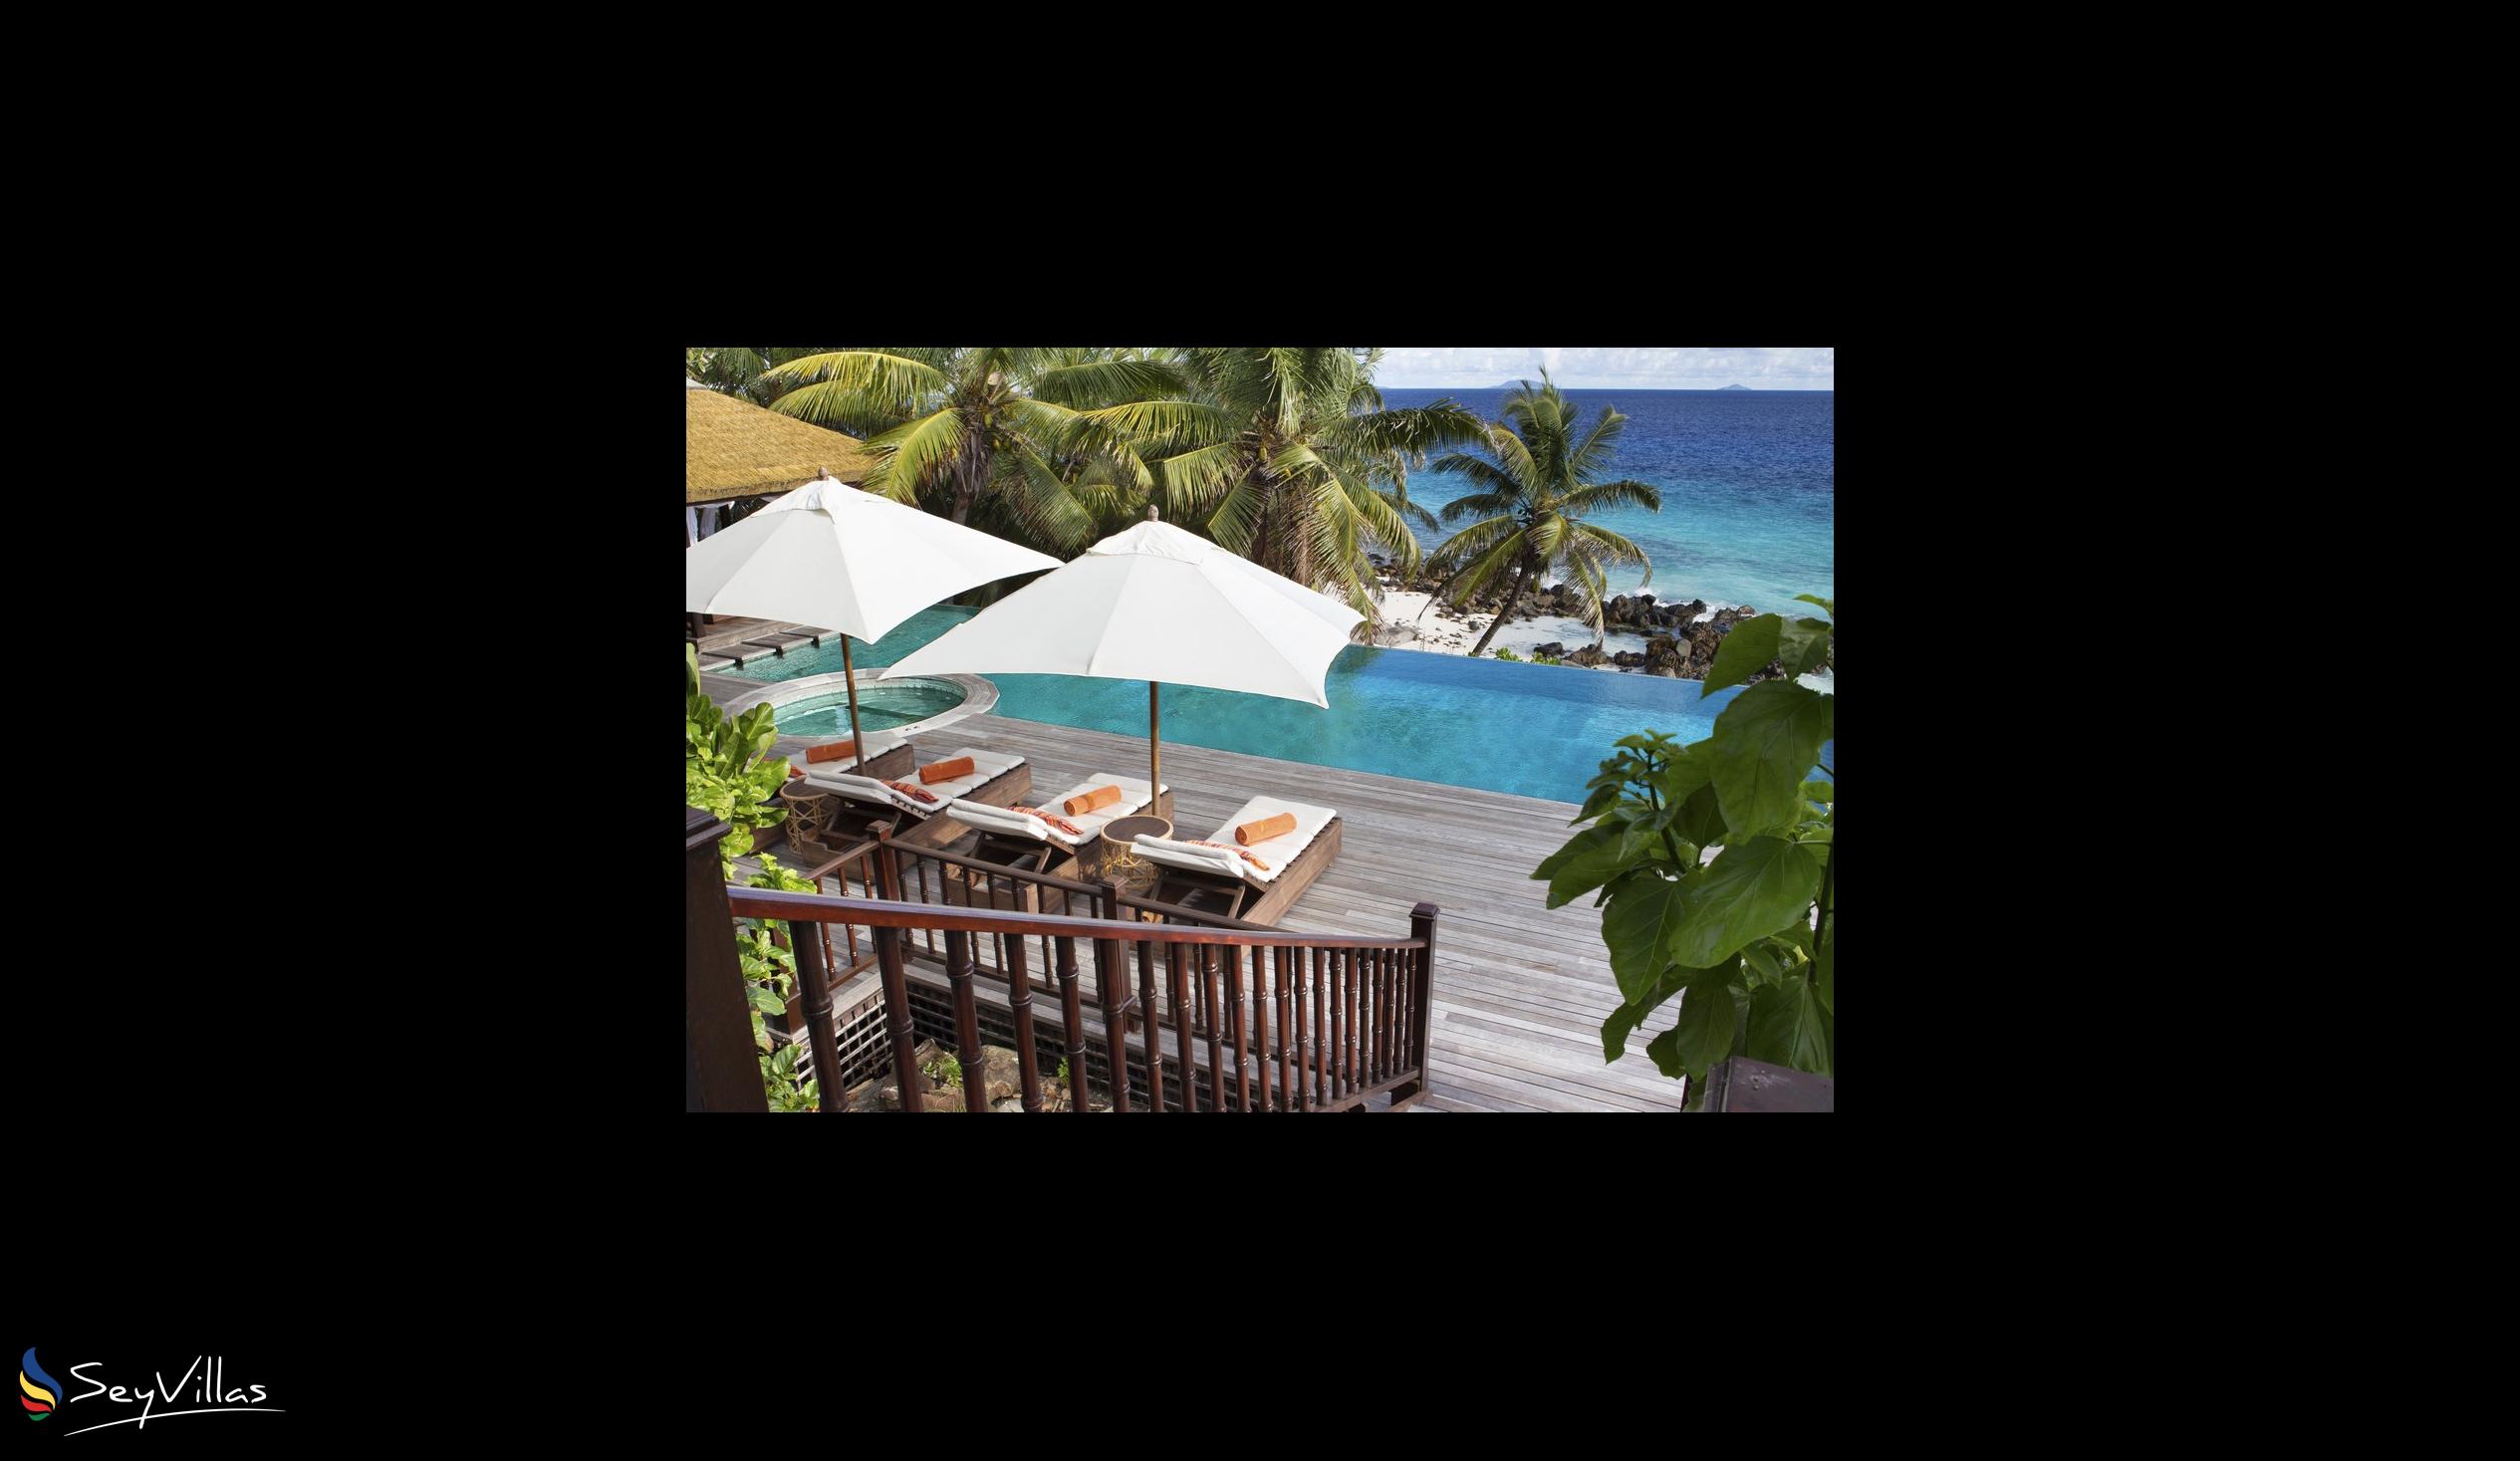 Photo 54: Fregate Island Private - Private Pool Twin Villa - Fregate Island (Seychelles)